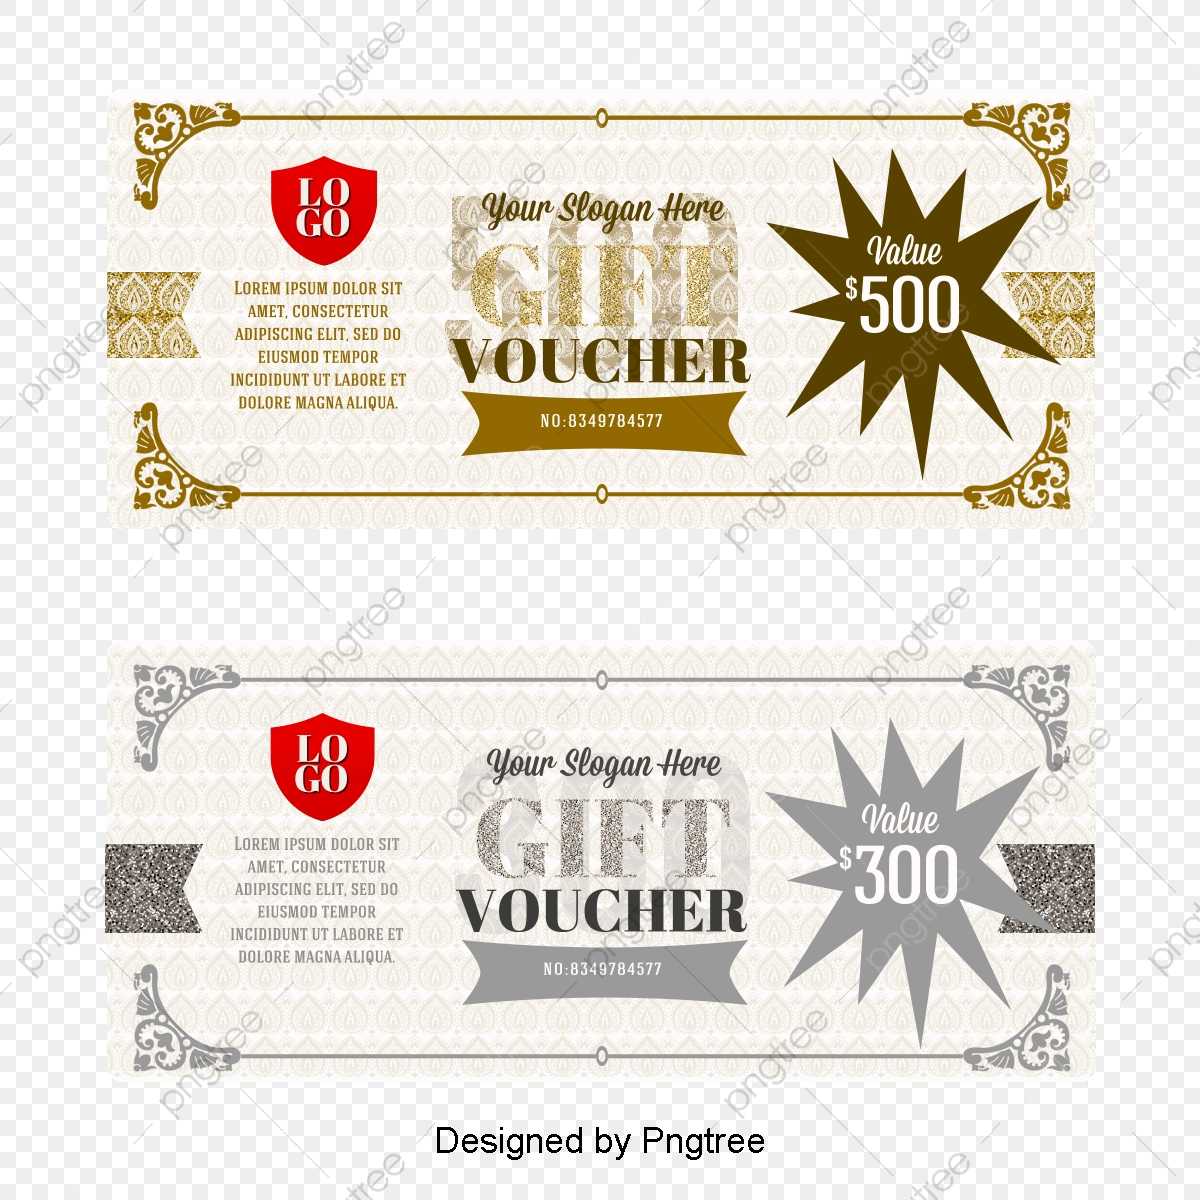 Vector Gift Certificate Template, Vector Voucher, Fantasy Throughout Gift Certificate Template Photoshop